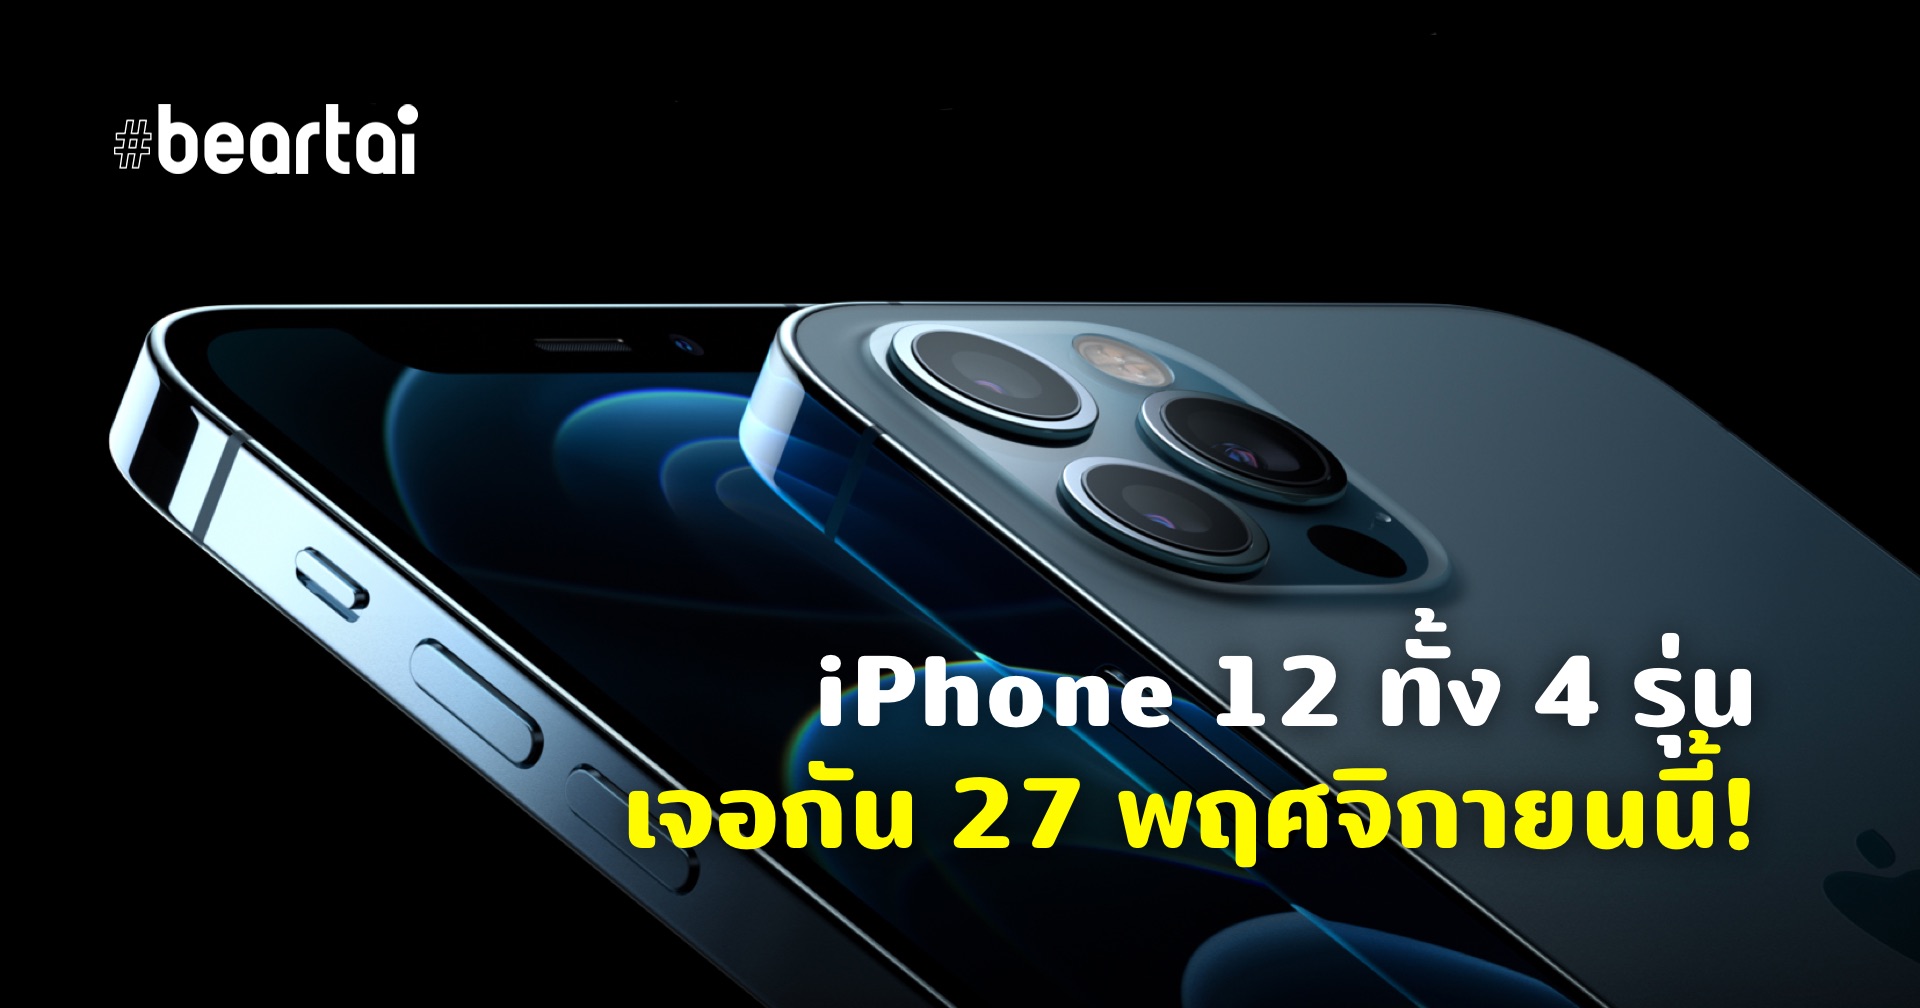 Apple ประเทศไทยประกาศวางจำหน่าย iPhone 12 ทั้ง 4 รุ่นวันที่ 27 พฤศจิกายนนี้